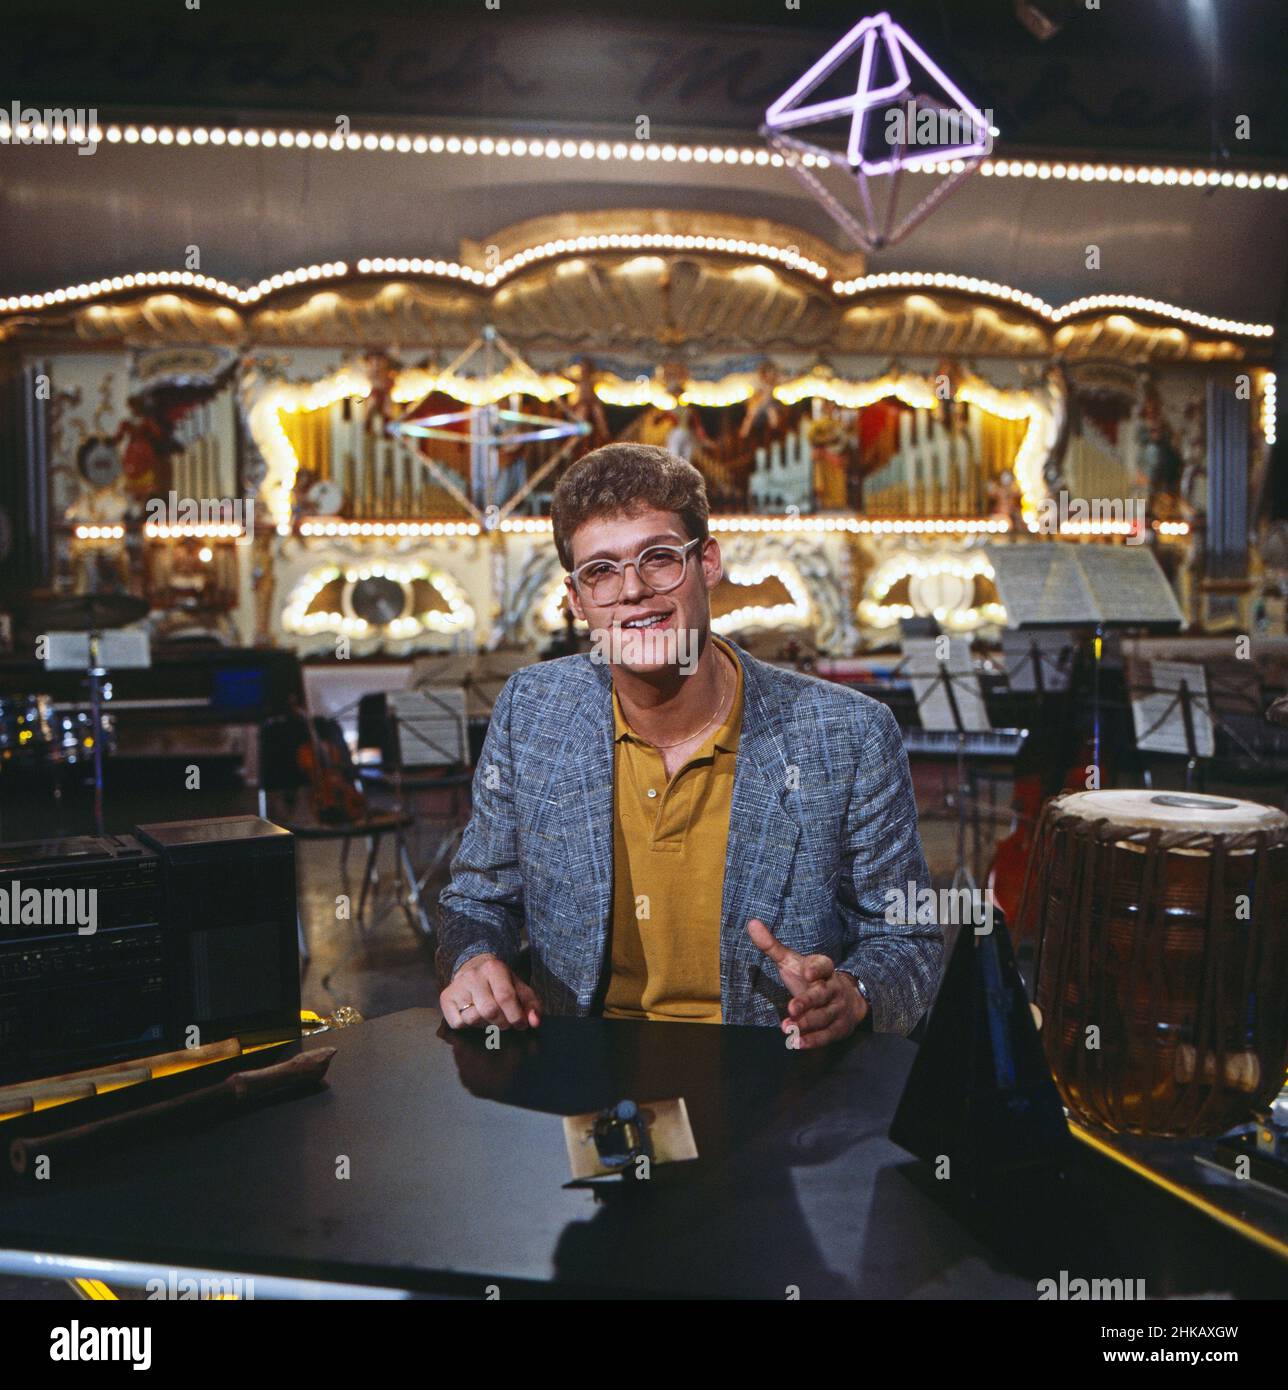 Computerzeit, Computermagazin, Deutschland 1983 - 1986, Moderator Claus Kruesken vor der größten Schaustellerorgel der Welt mit 1186 Pfeifen. Stock Photo